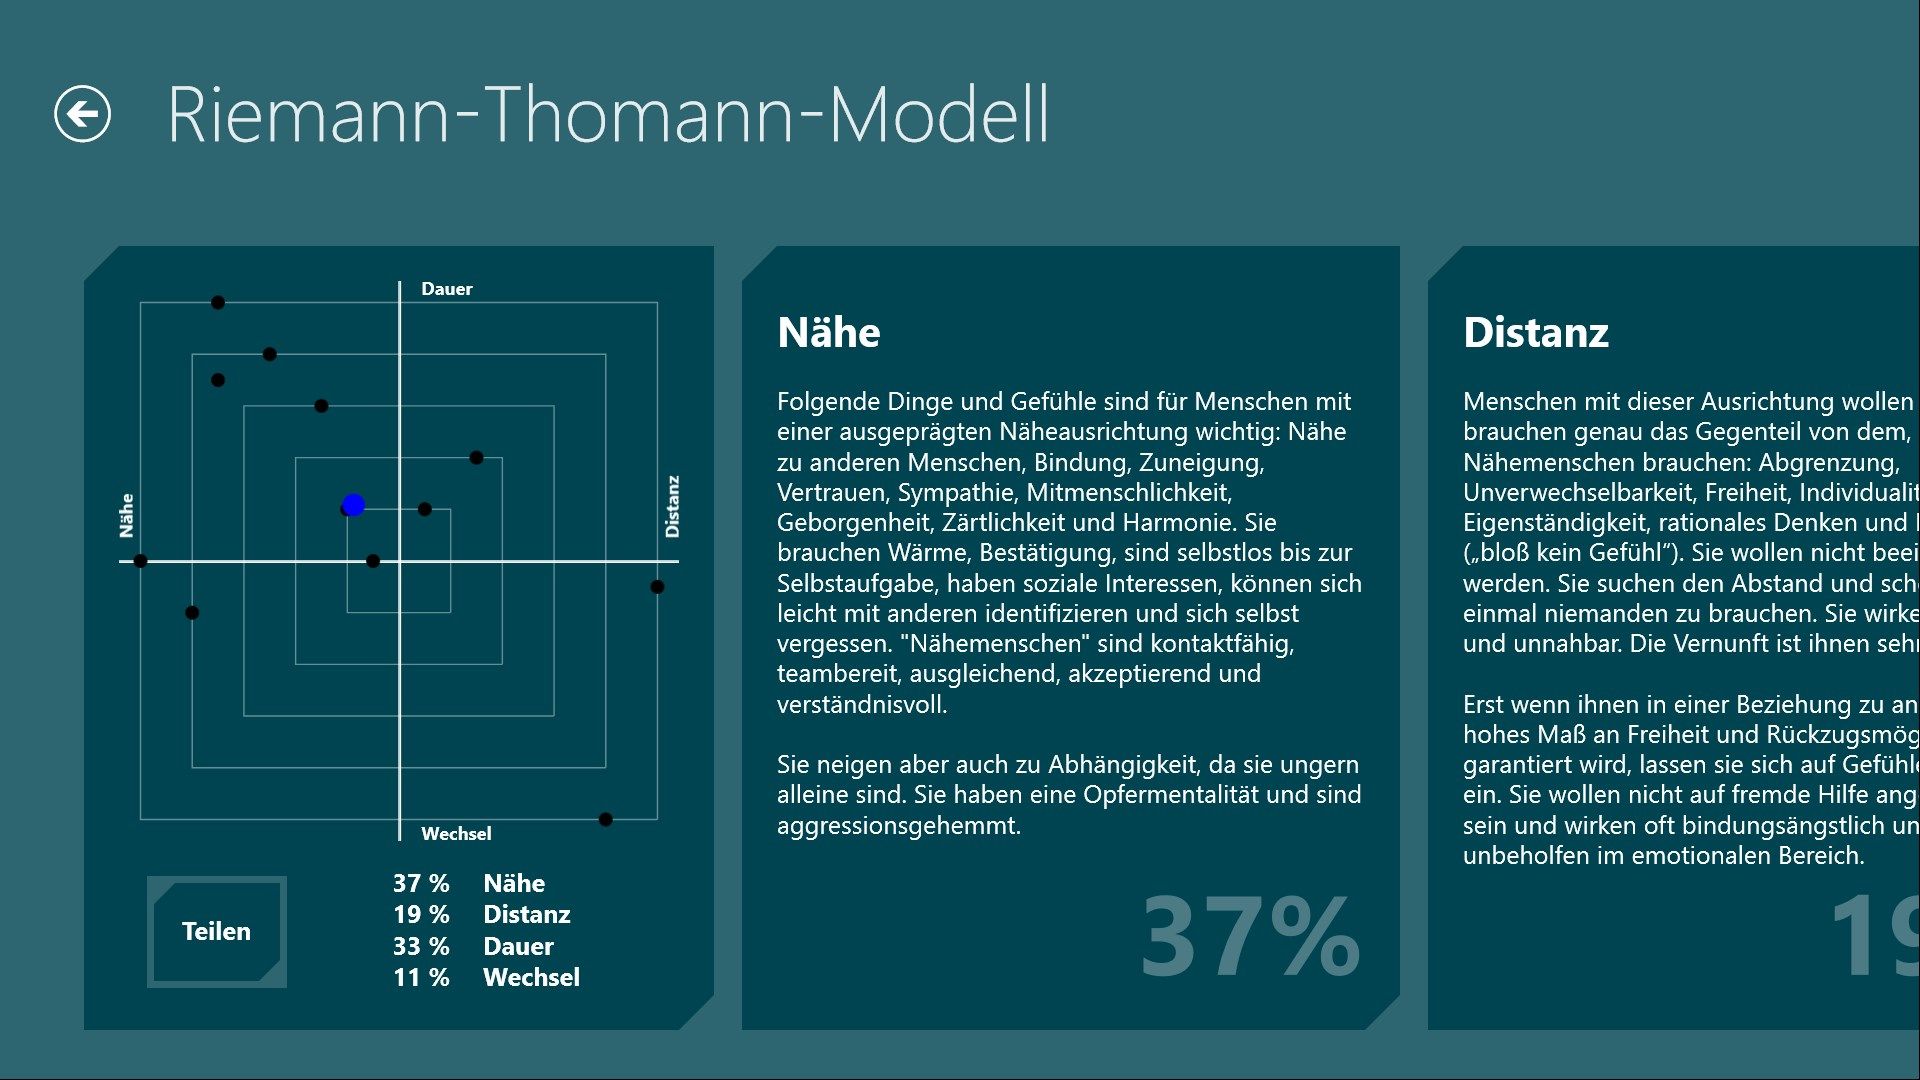 Auswertung basierend auf dem Riemann-Thomann-Modell